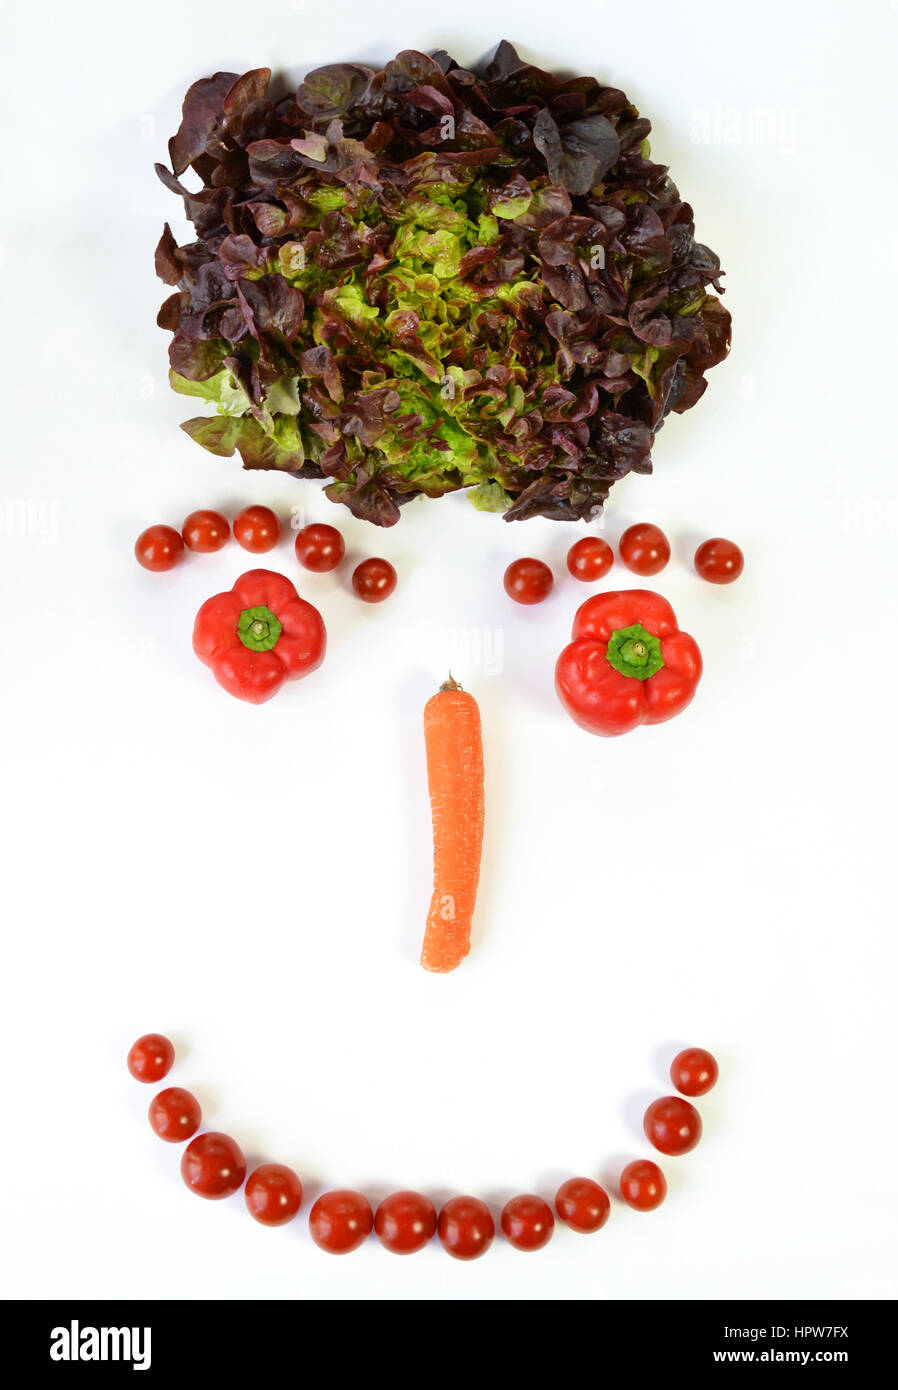 Un smiley, avec des légumes, salade, poivrons, carottes, tomates. Banque D'Images